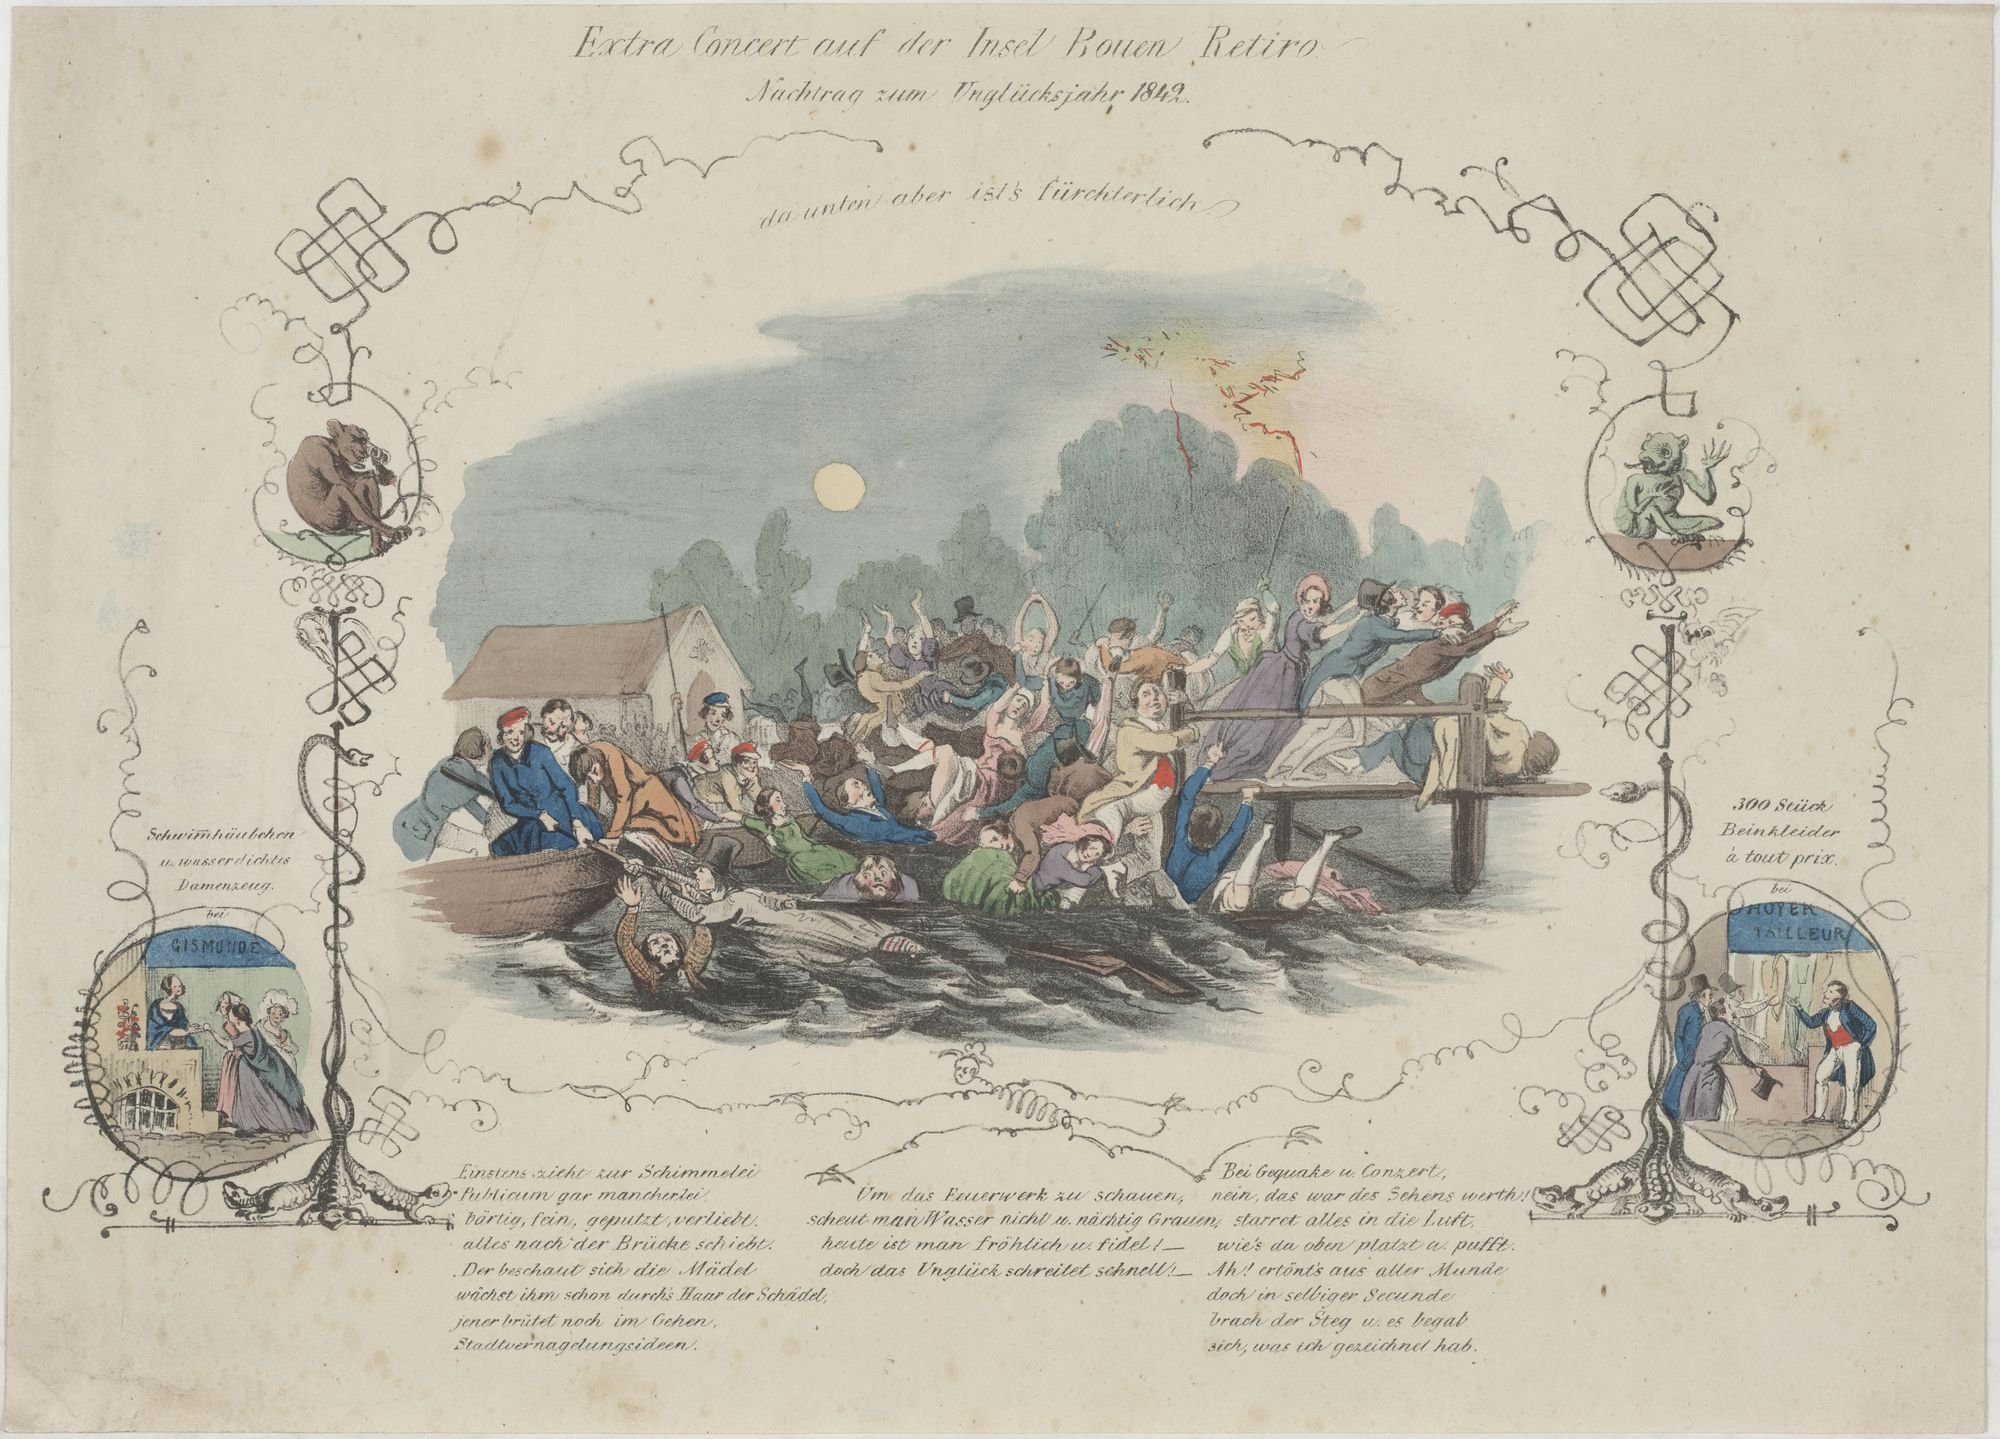 Extra Concert auf der Insel Bouen Retiro./ Nachtrag zum Unglücksjahr 1842. (Kulturstiftung Sachsen-Anhalt Public Domain Mark)